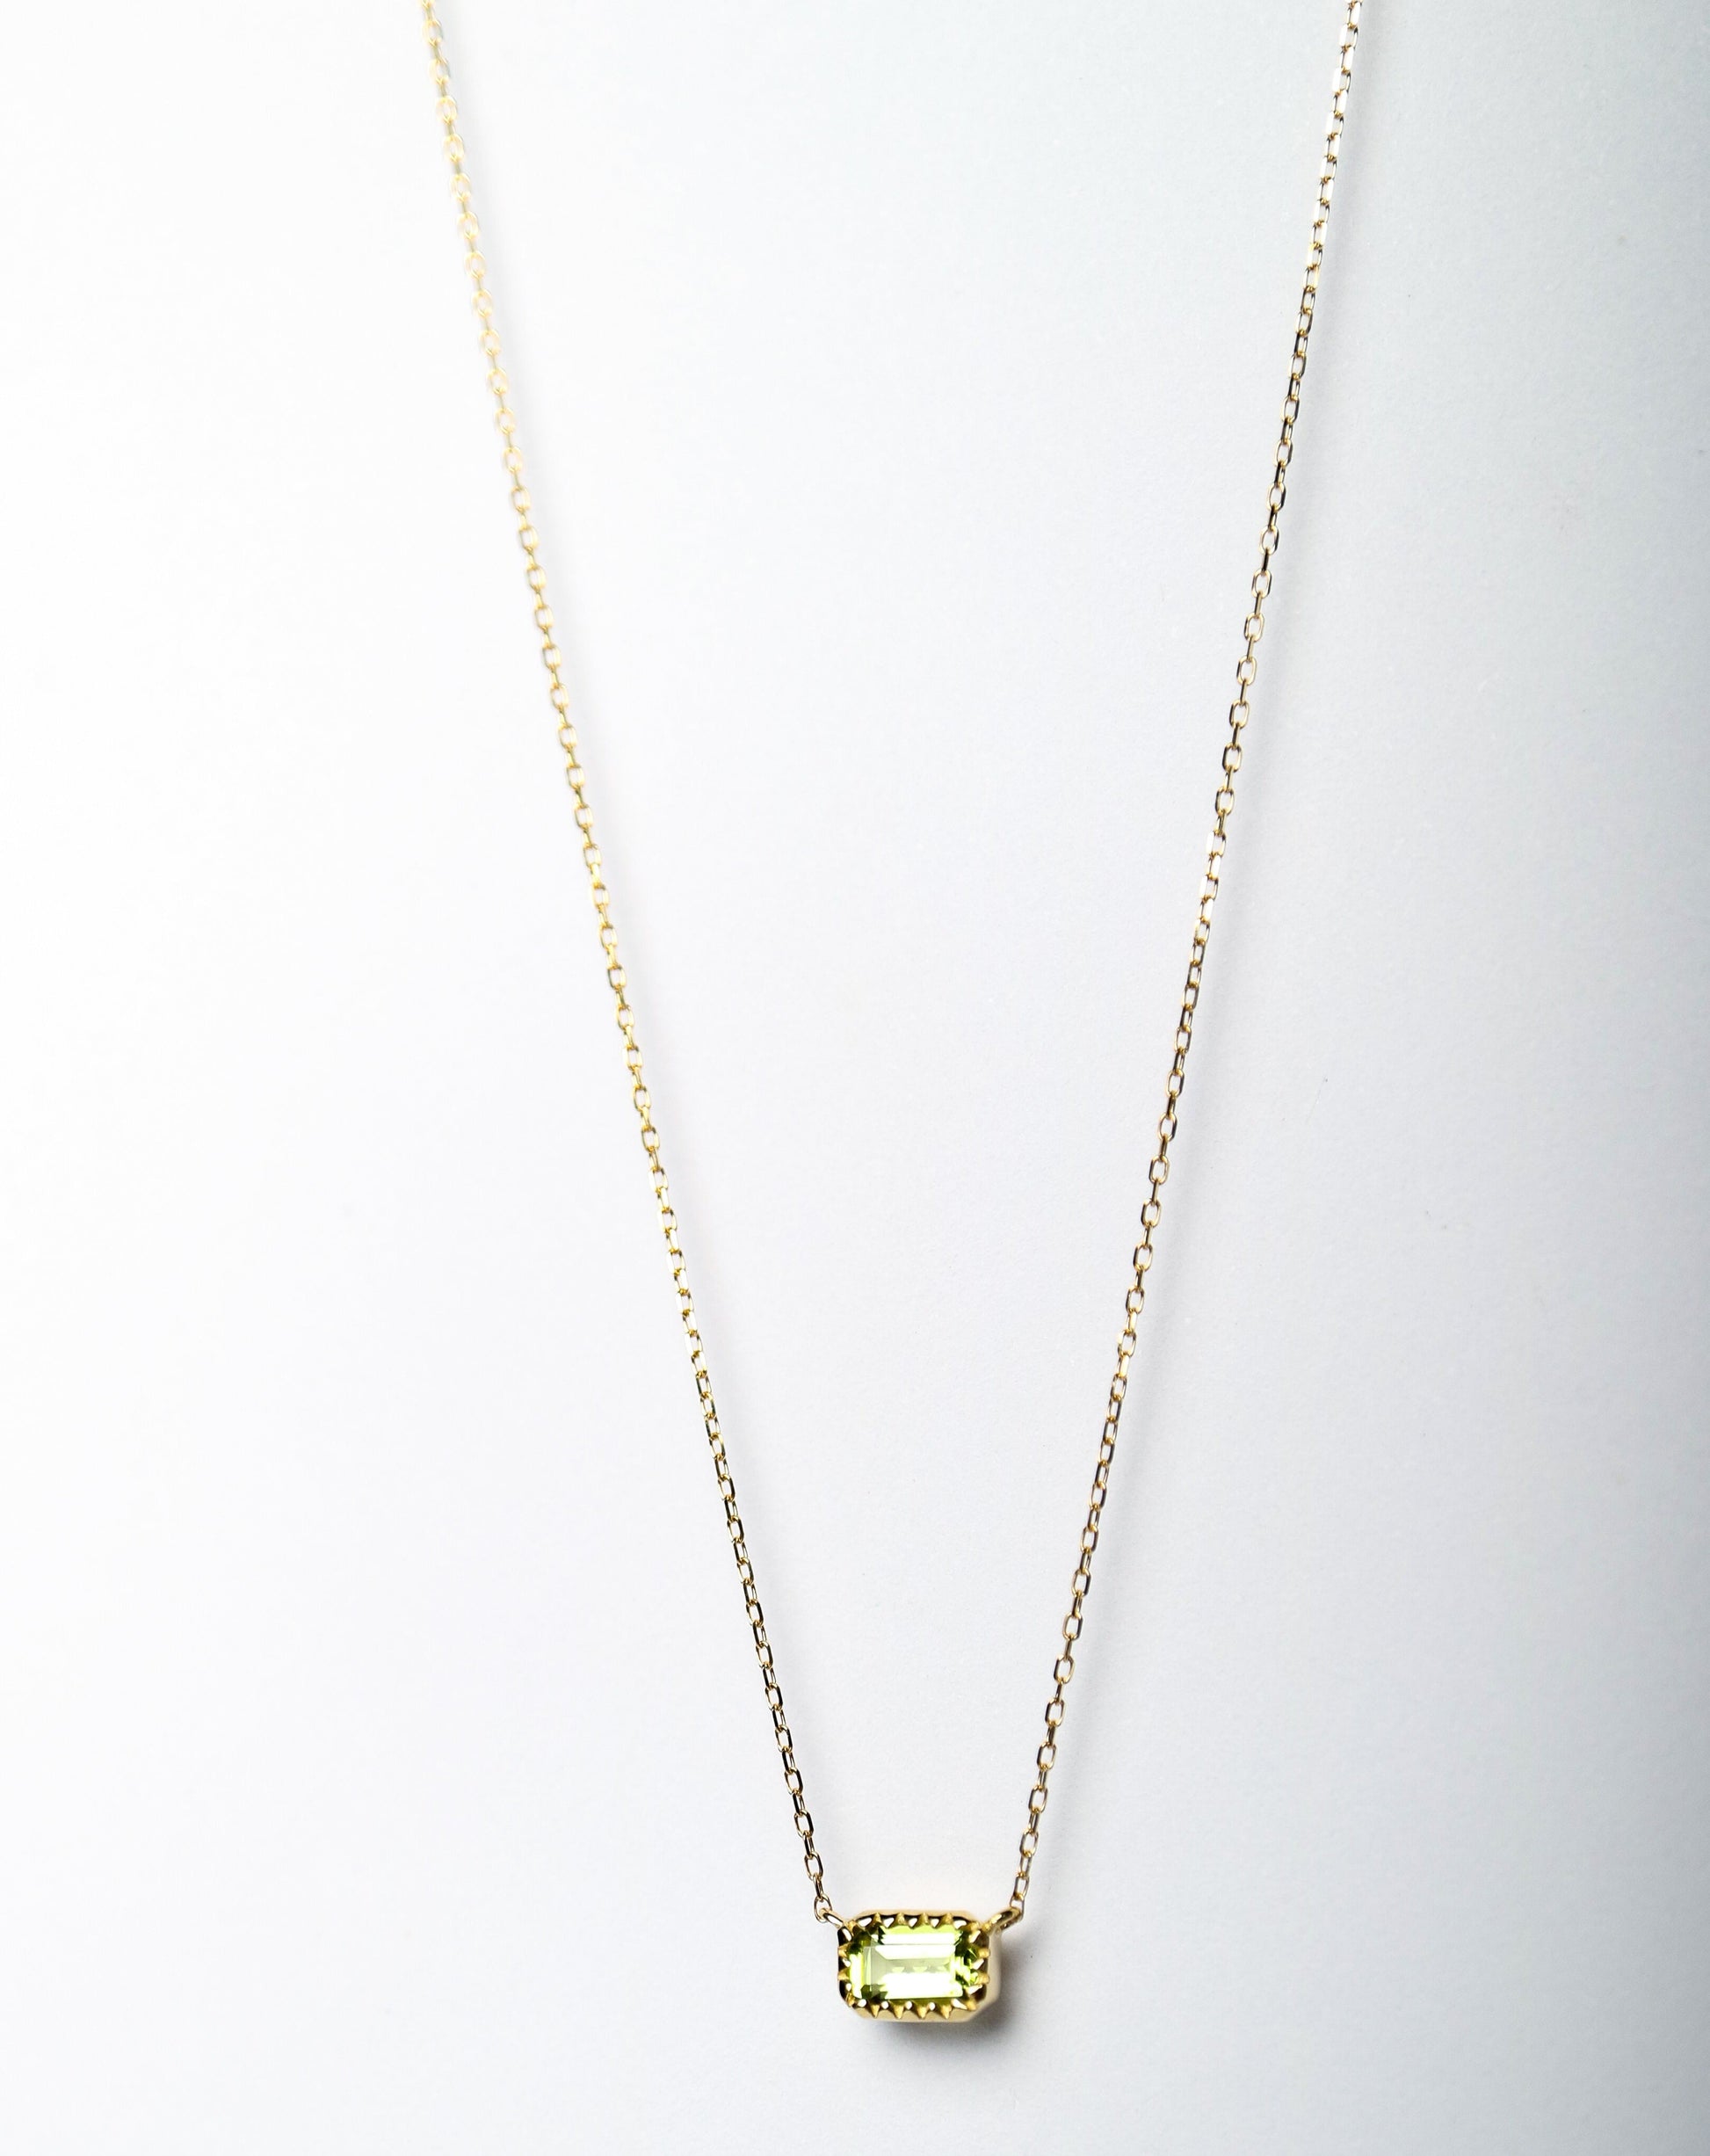 9kt gold Pendant with baguette-cut olivine pendant